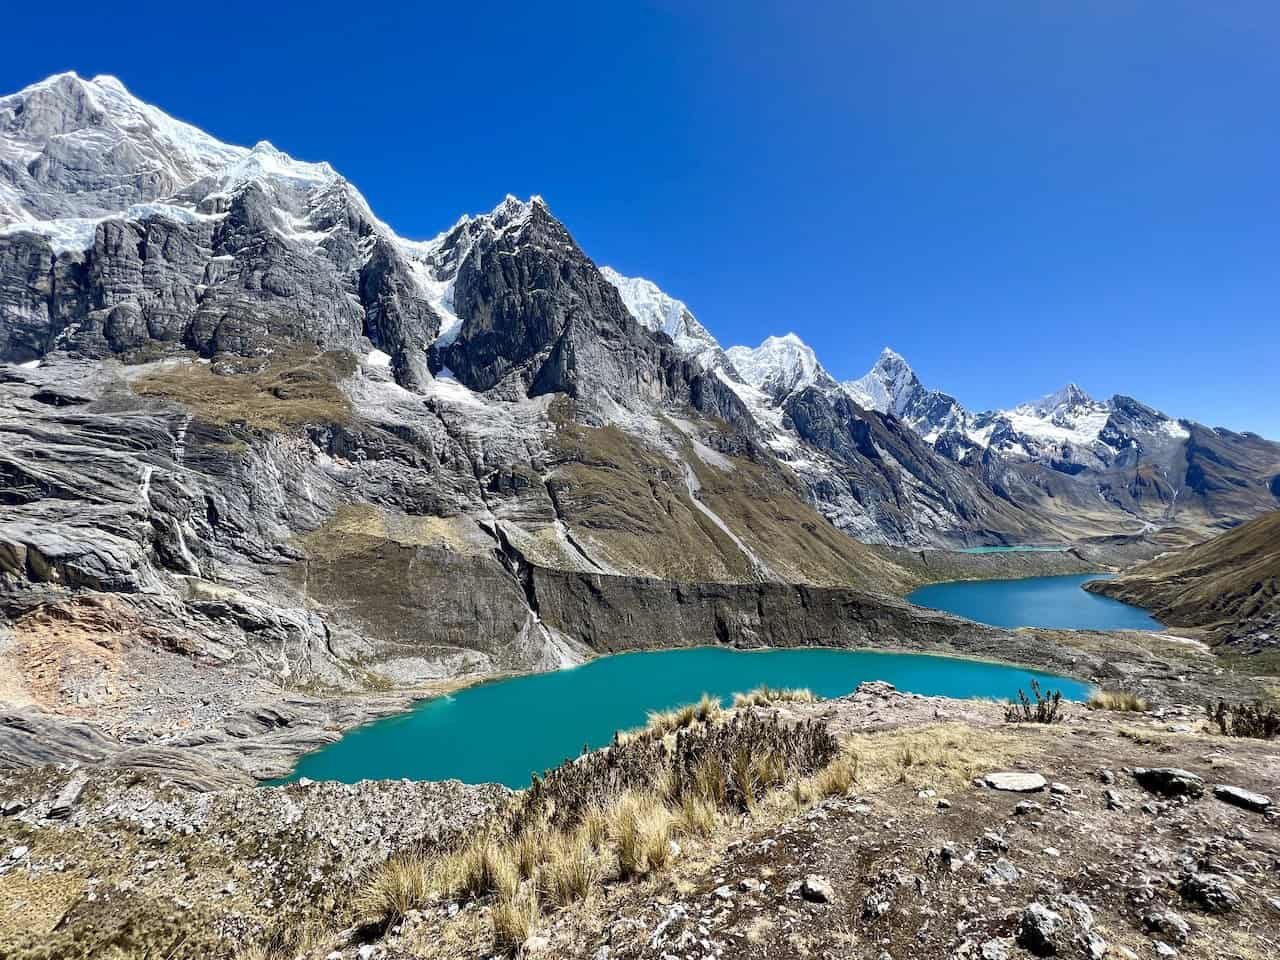 Mirador de los Tres Lagunas Peru